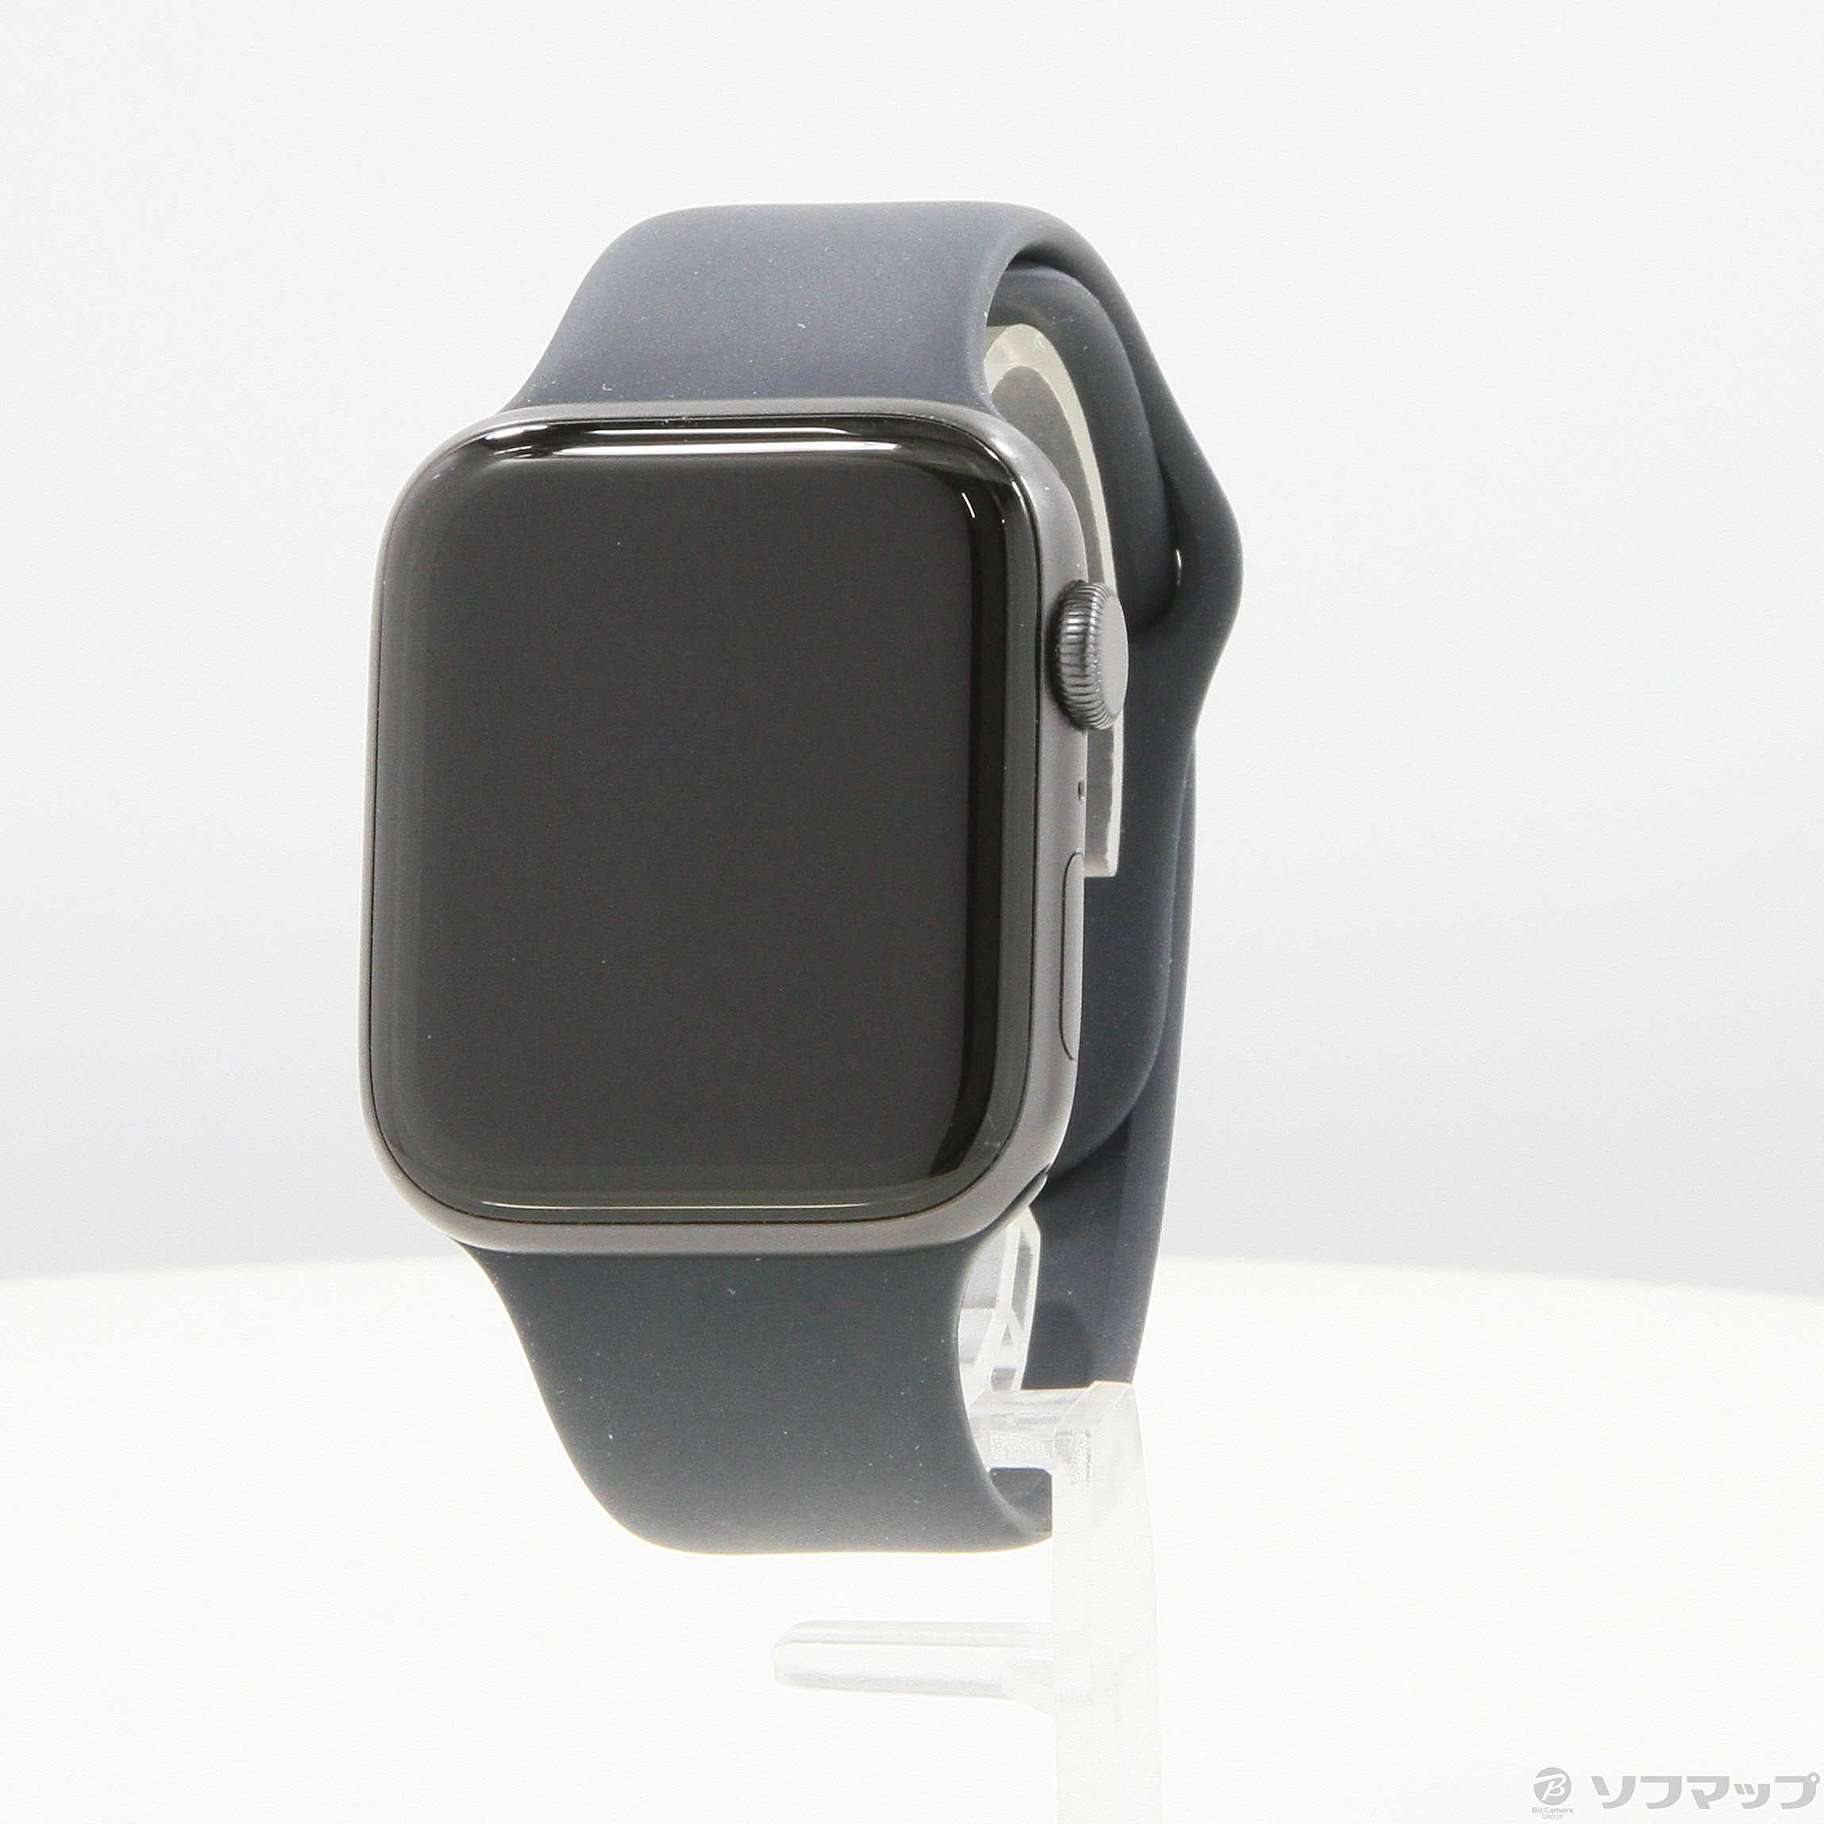 Apple Watch SE スペースグレー44mm GPSつきアップルウォッチ - www